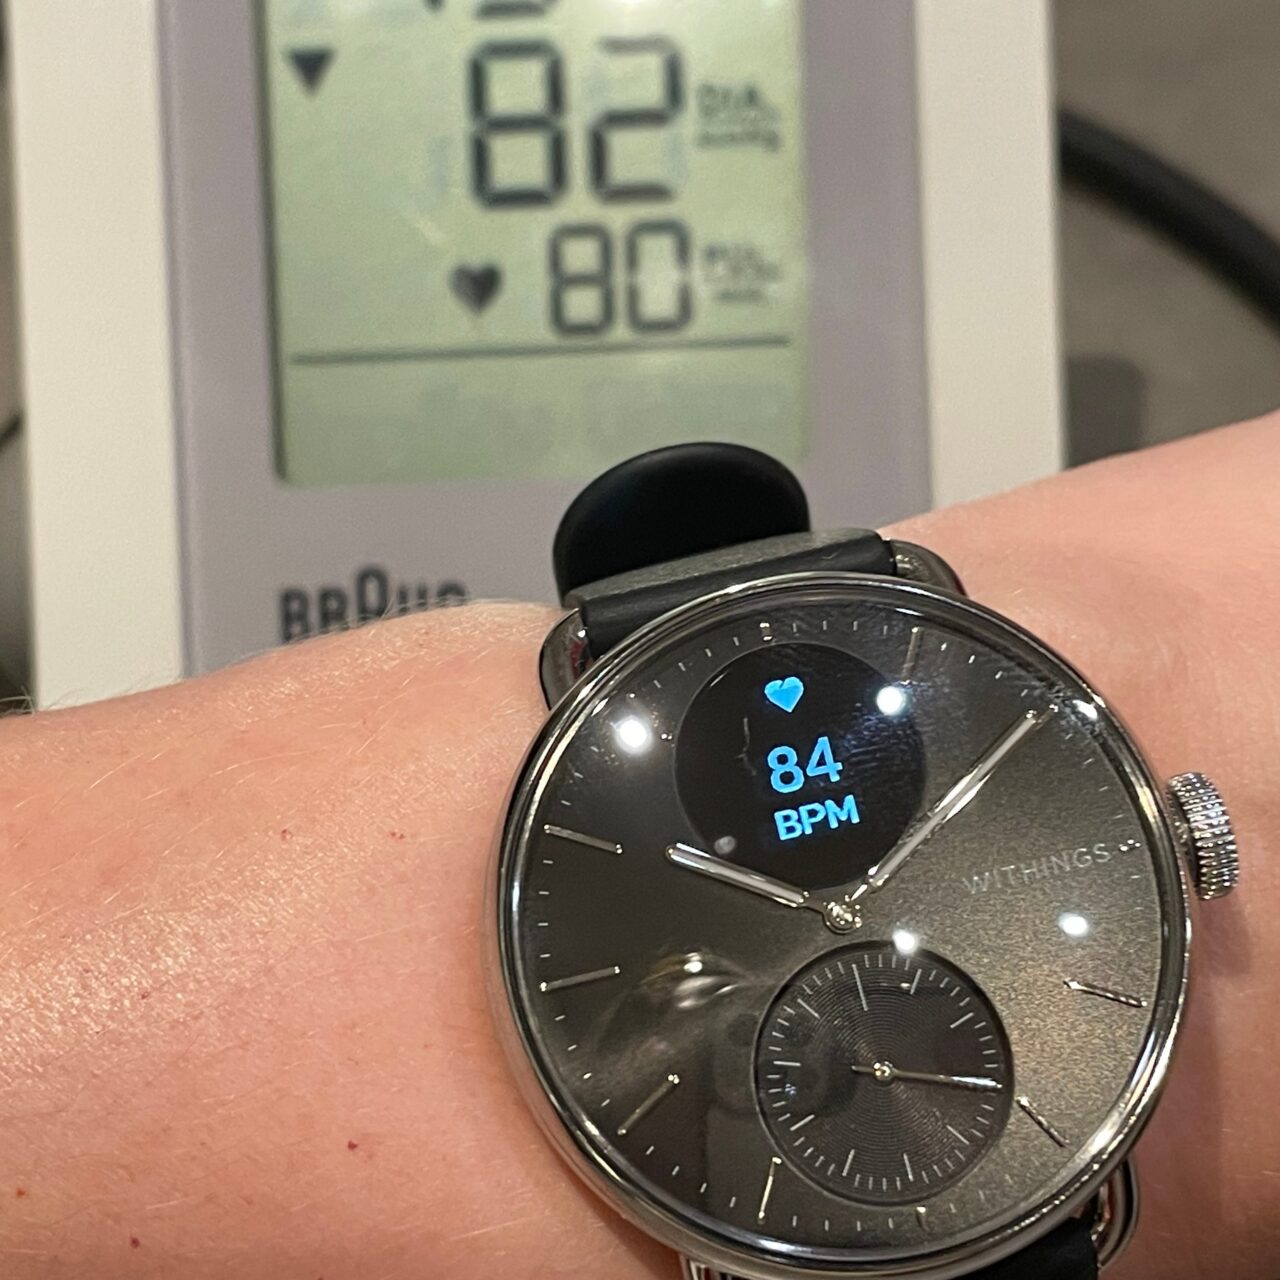 Zdjęcie nadgarstka osoby z inteligentnym zegarkiem Withings pokazującym tętno 84 BPM na tle monitora ciśnienia krwi wyświetlającego również tętno 82 BPM.